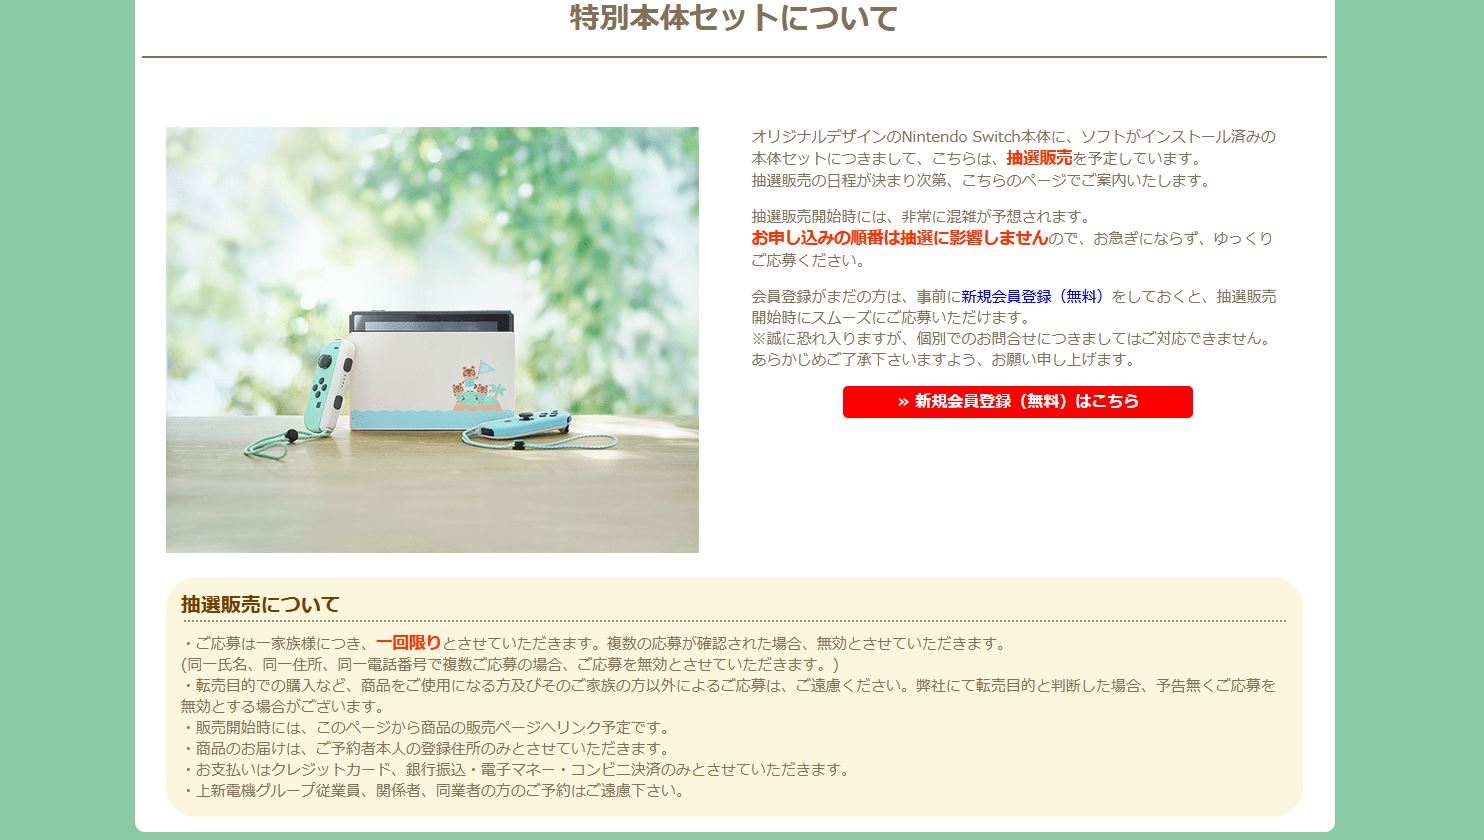 更新 Nintendo Switch あつまれ どうぶつの森セット はjoshin Webでも抽選販売に Nintendo Switch 情報ブログ 非公式